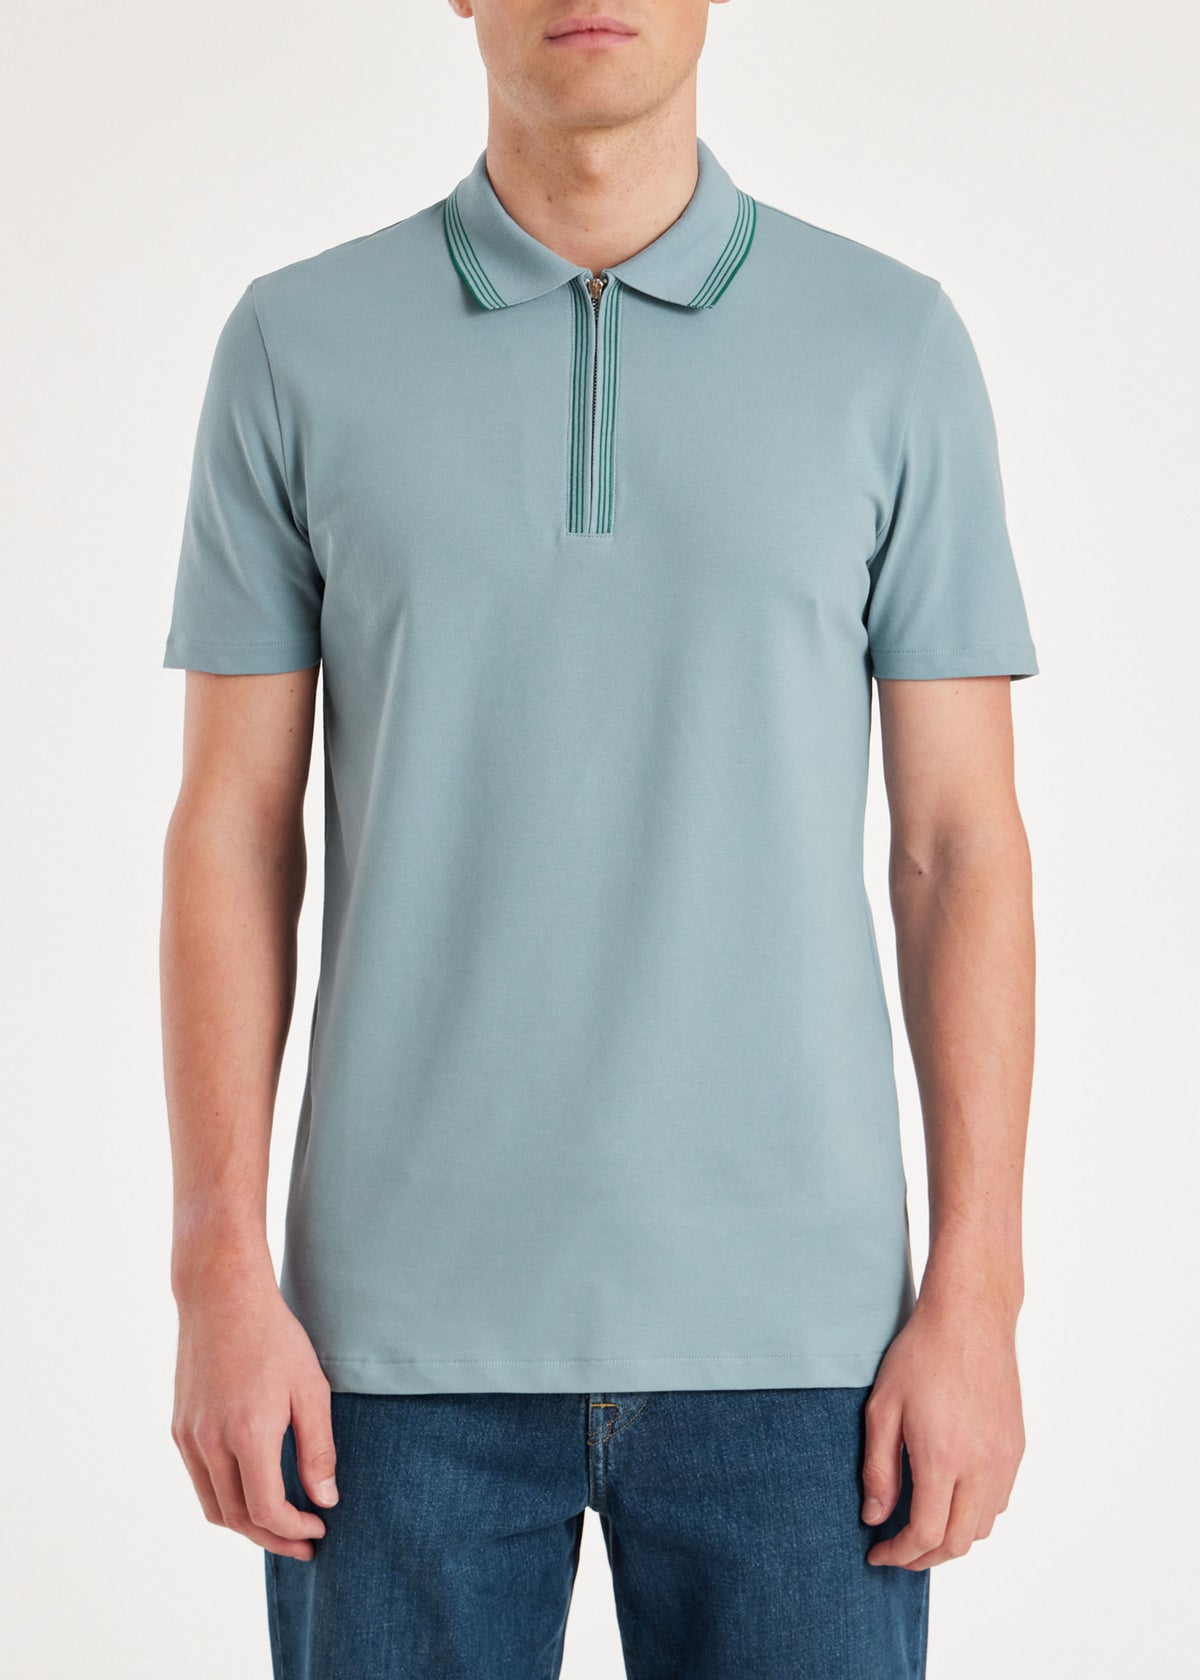 Zip Neck Stretch-Cotton Polo Shirt - Sky Blue